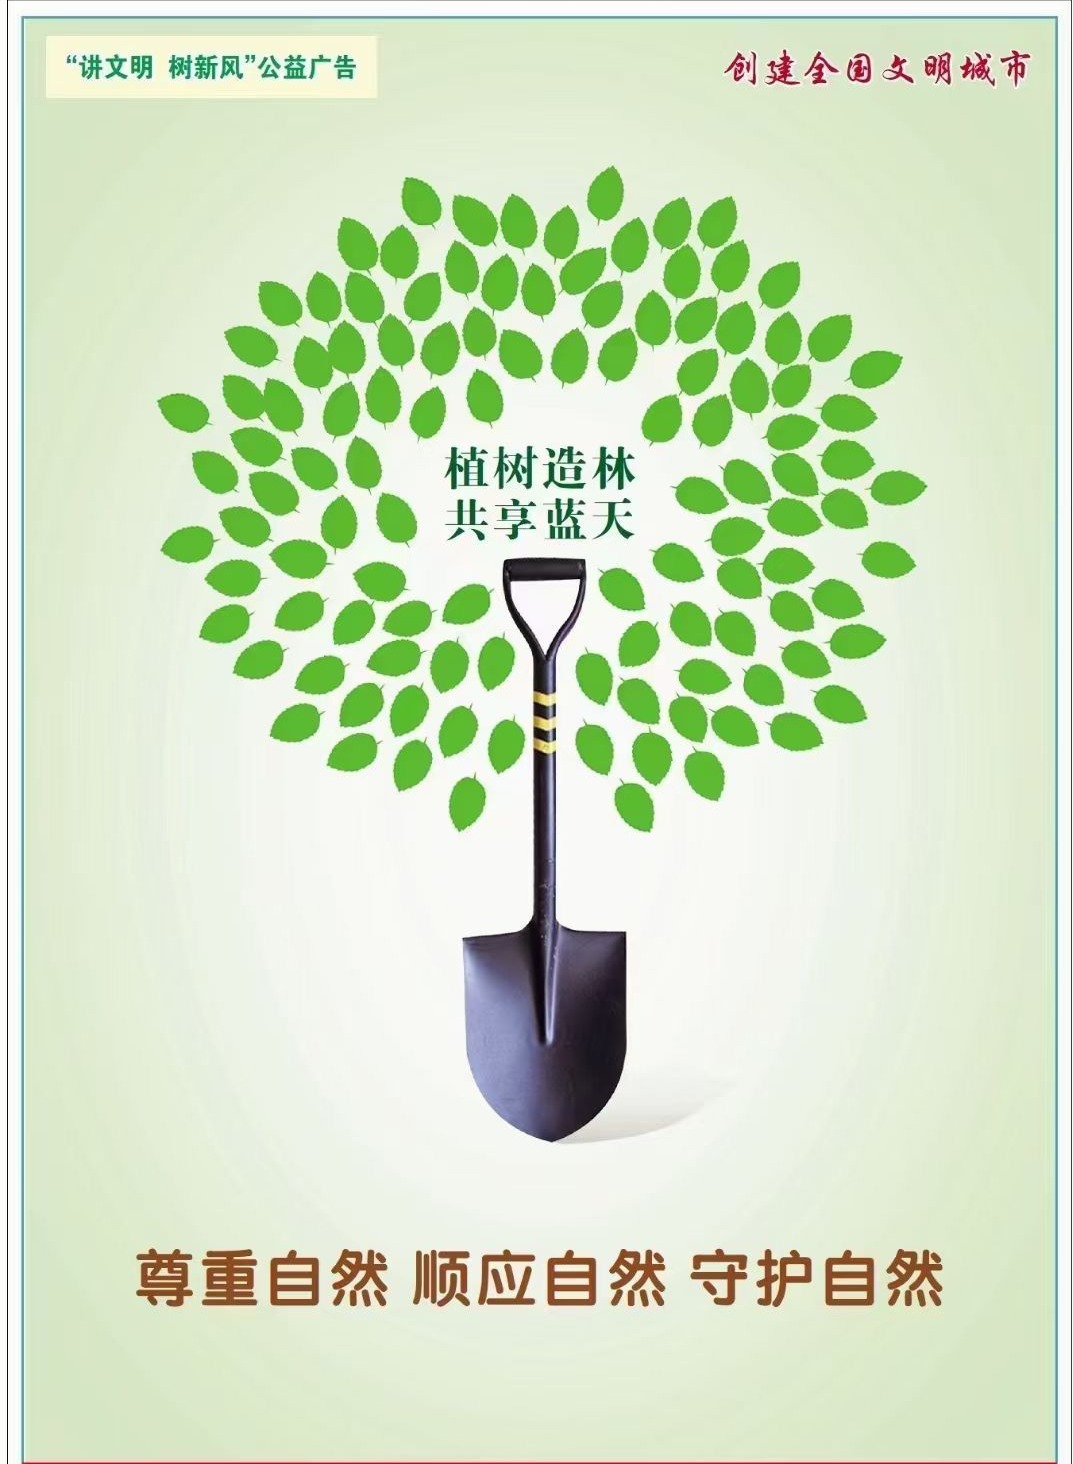 爱护树木的公益广告语图片